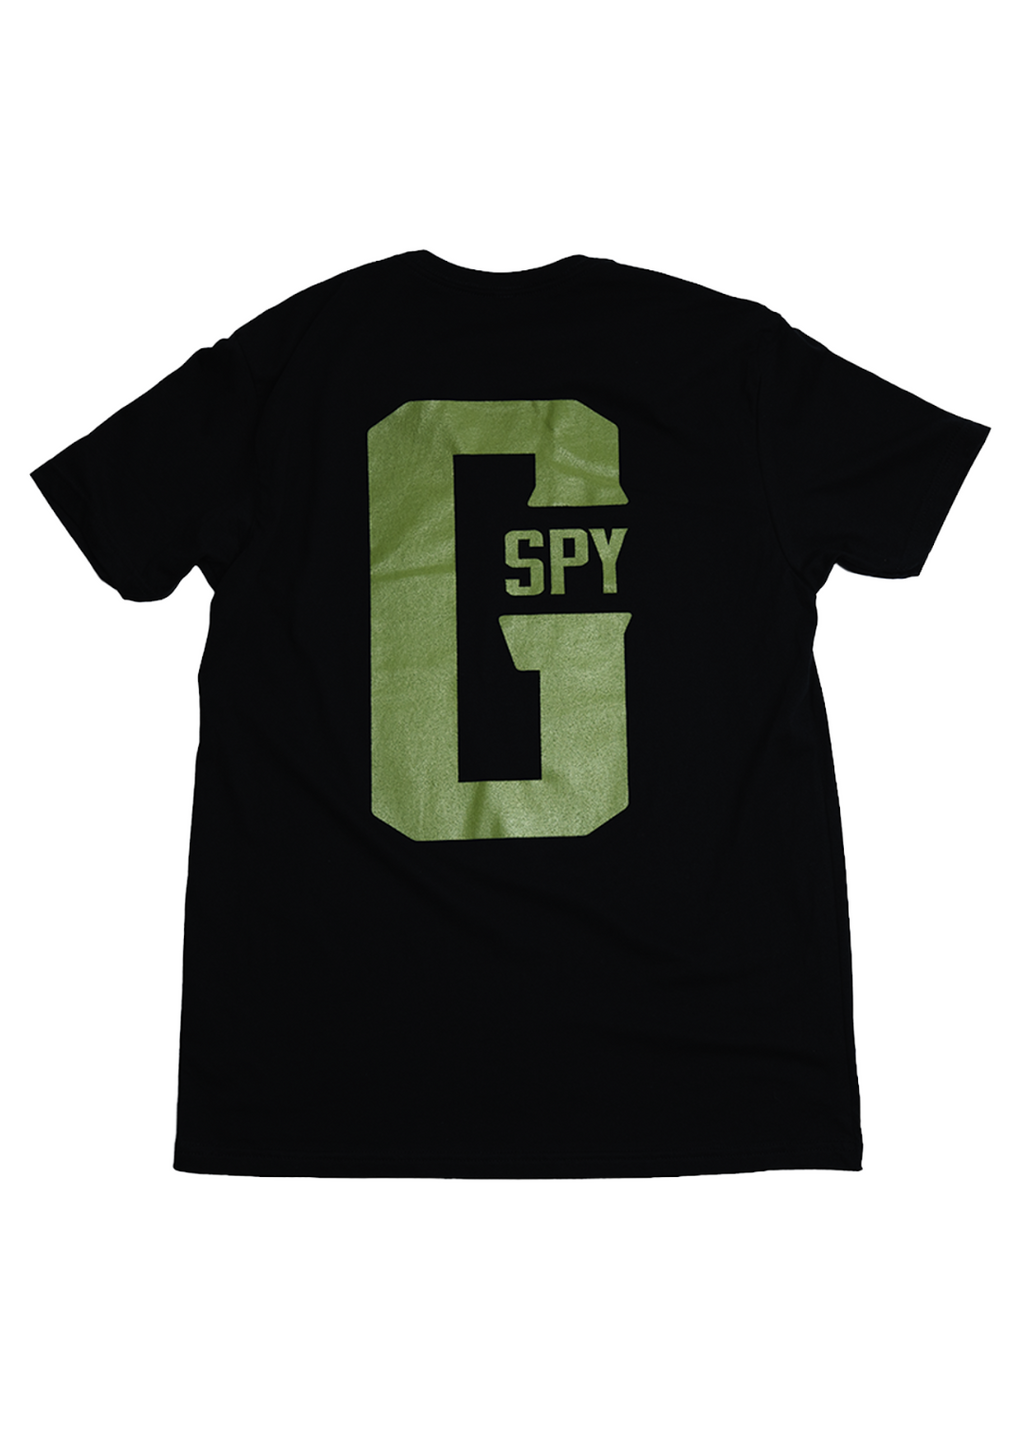 2022 G-Spy Tee - Black/Olive